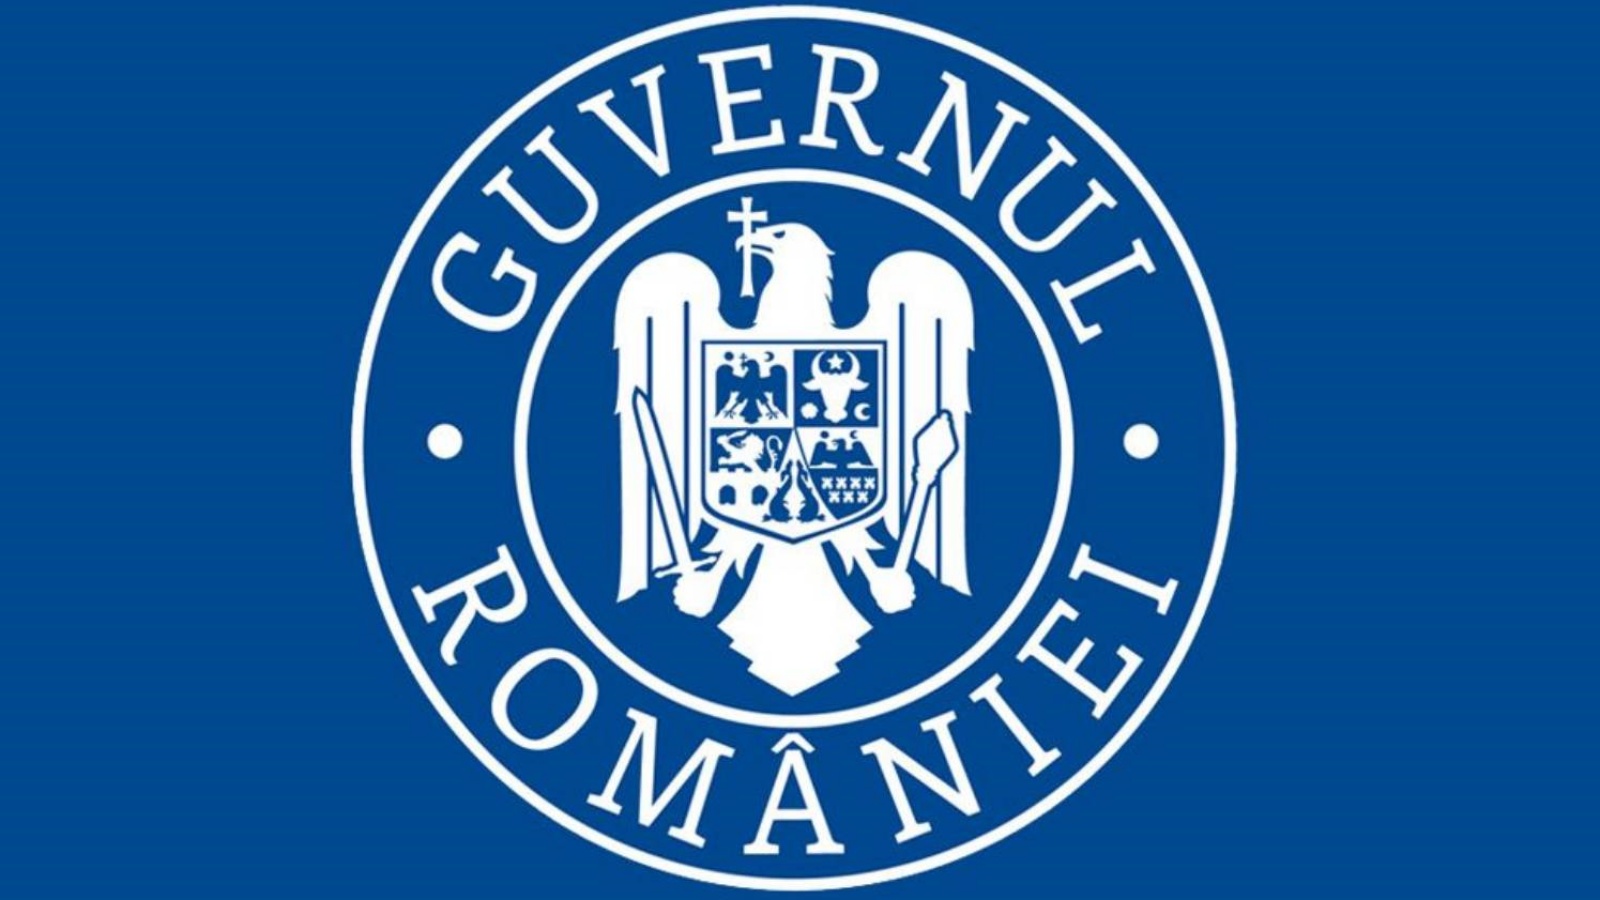 Guvernul Romaniei Cand va fi Vaccinata 90% din Populatie